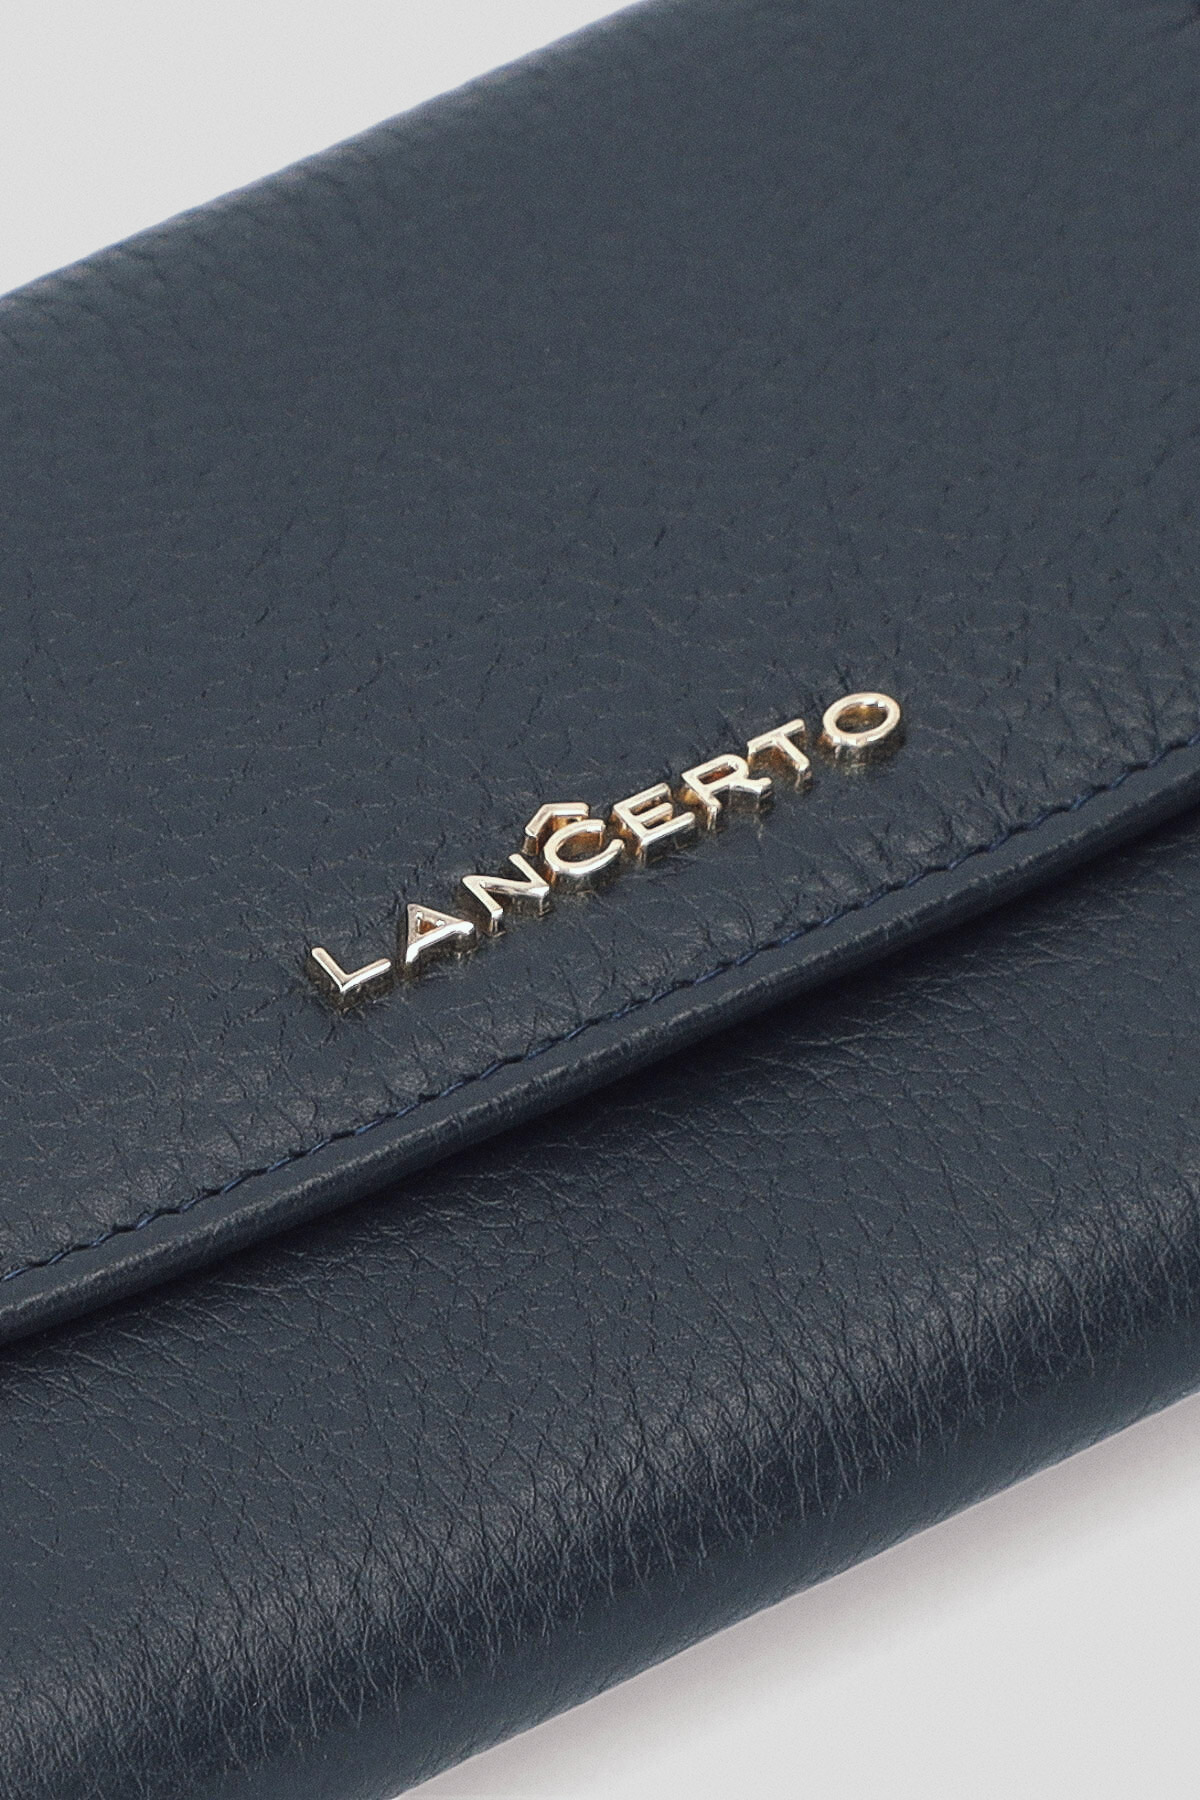 Prada Small Saffiano Metal Leather Wallet Granato